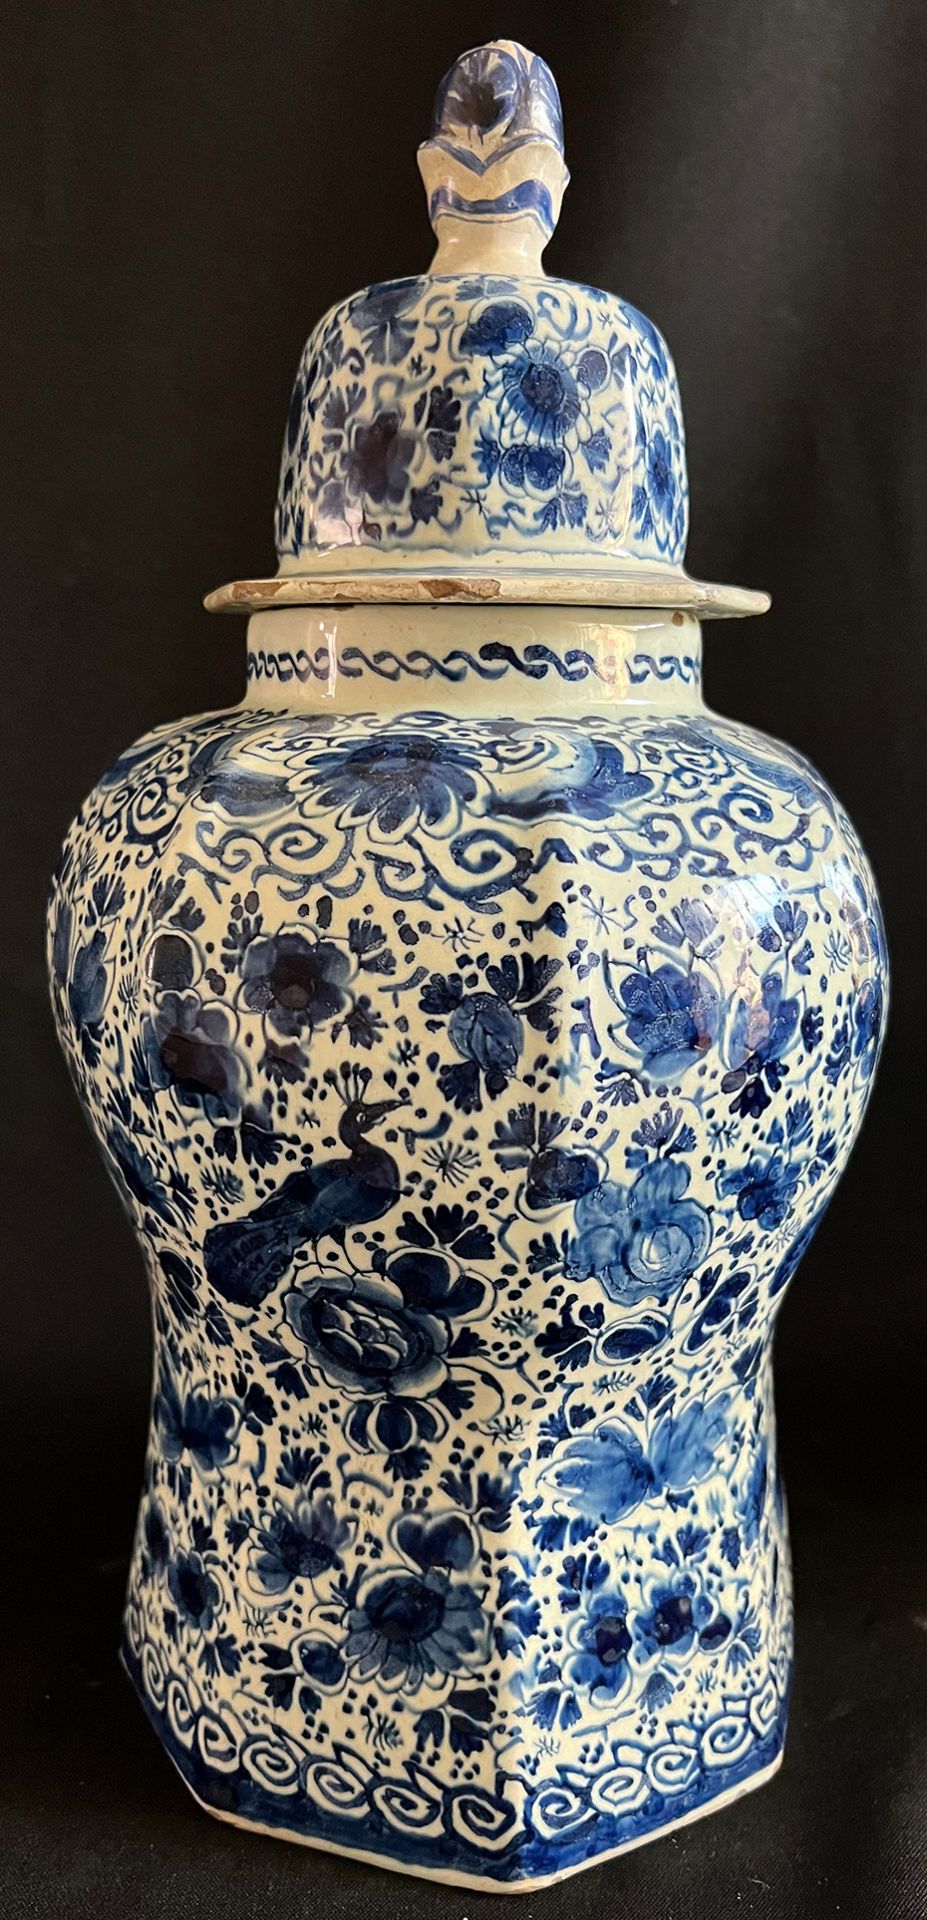 2 Deckelvasen / two vases with lid, Delft, 18. Jh., Blumen- und Vogeldekor, Altersspuren, - Bild 7 aus 8